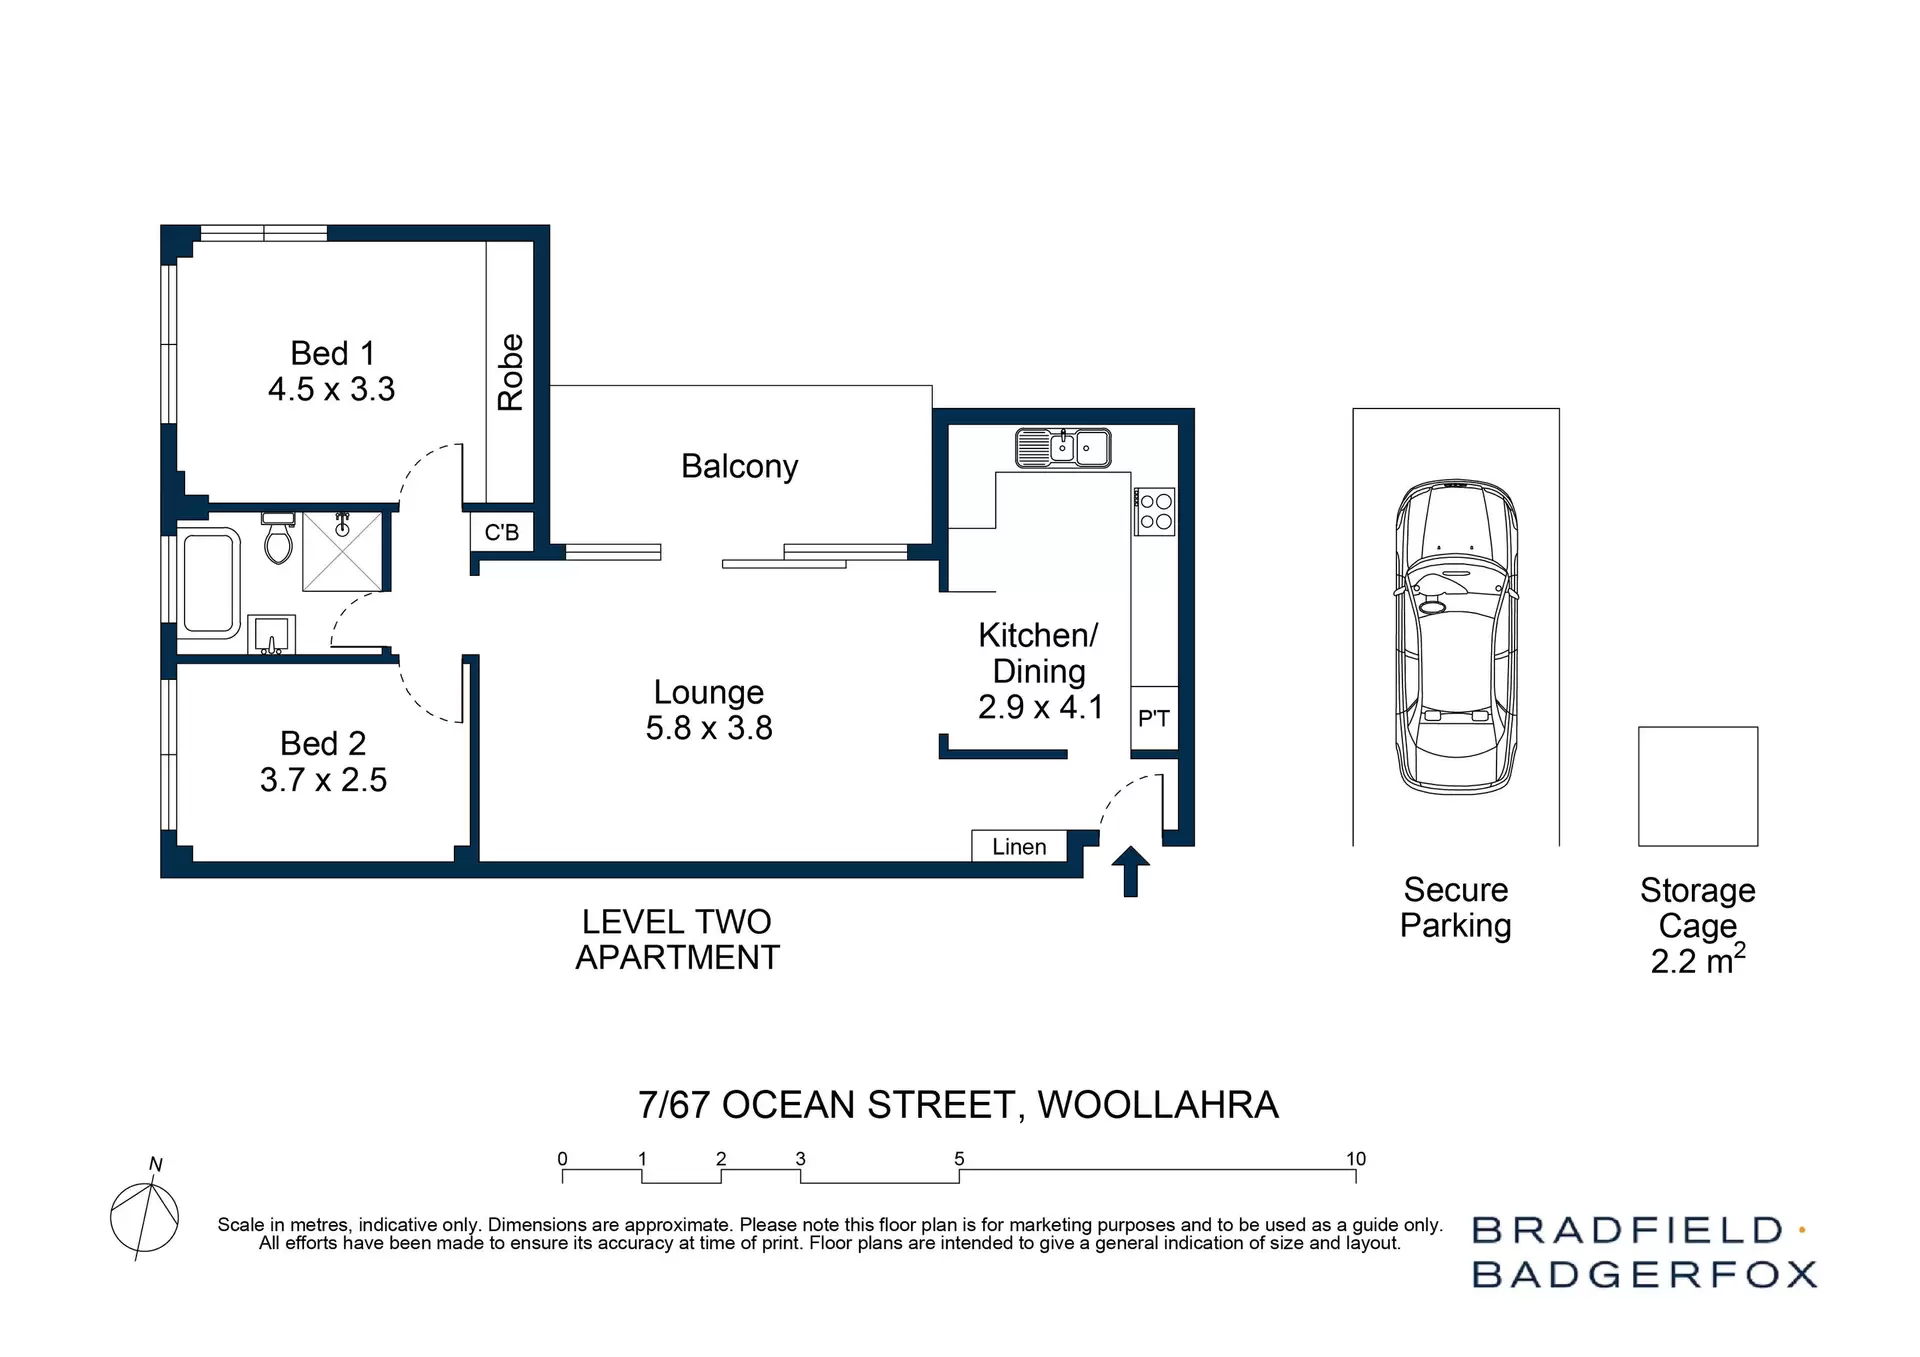 7/67 Ocean Street, Woollahra Sold by Bradfield Badgerfox - image 1